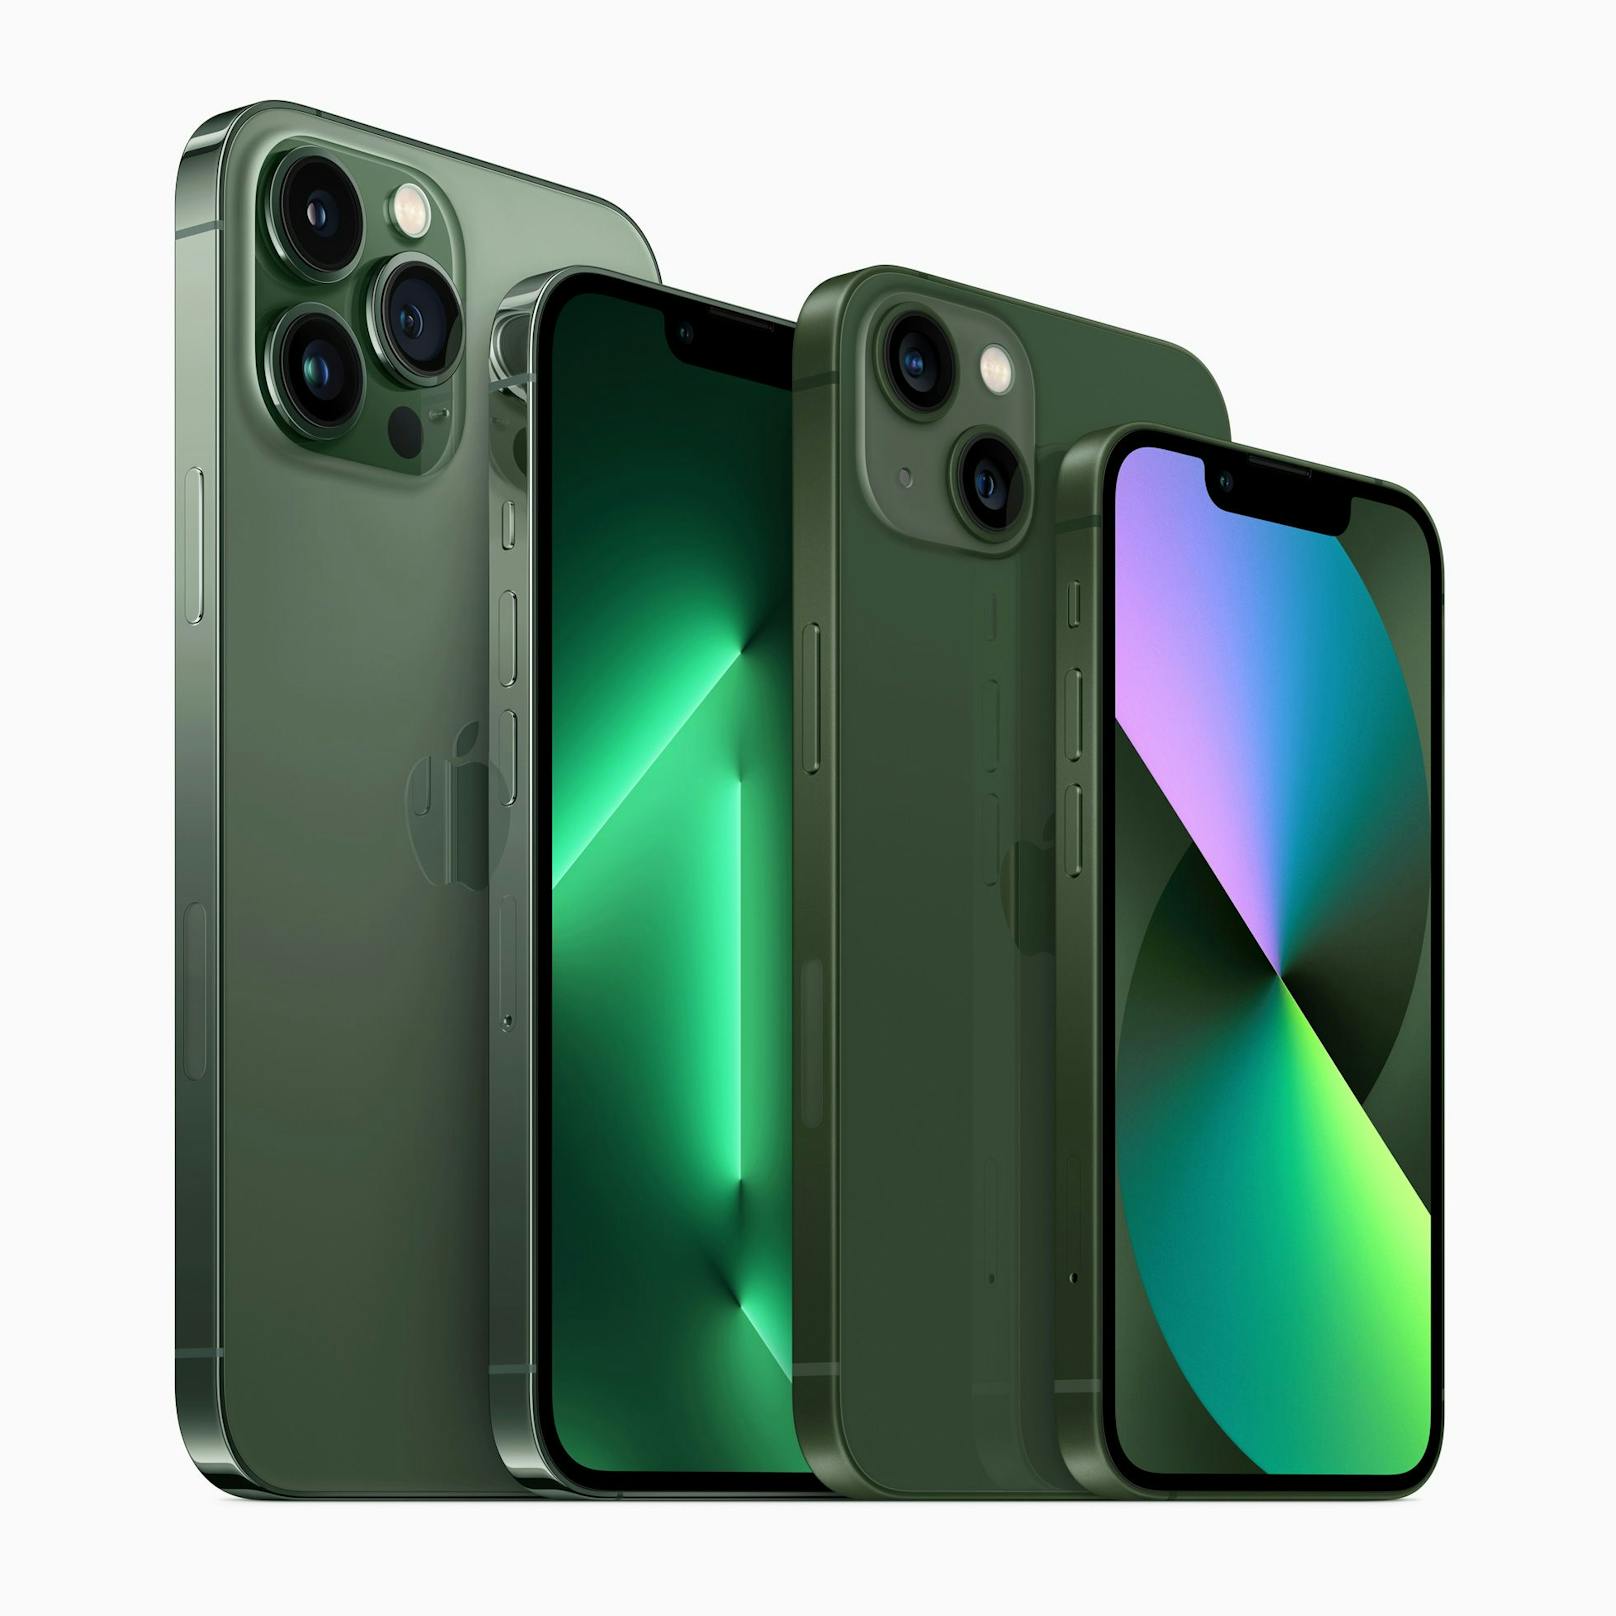 Das iPhone 13 gibt es zudem bald in neuen Farben, nämlich das iPhone 13 Pro in Alpingrün (ab 1.149 Euro) und das iPhone 13 in Grün (ab 799 Euro).